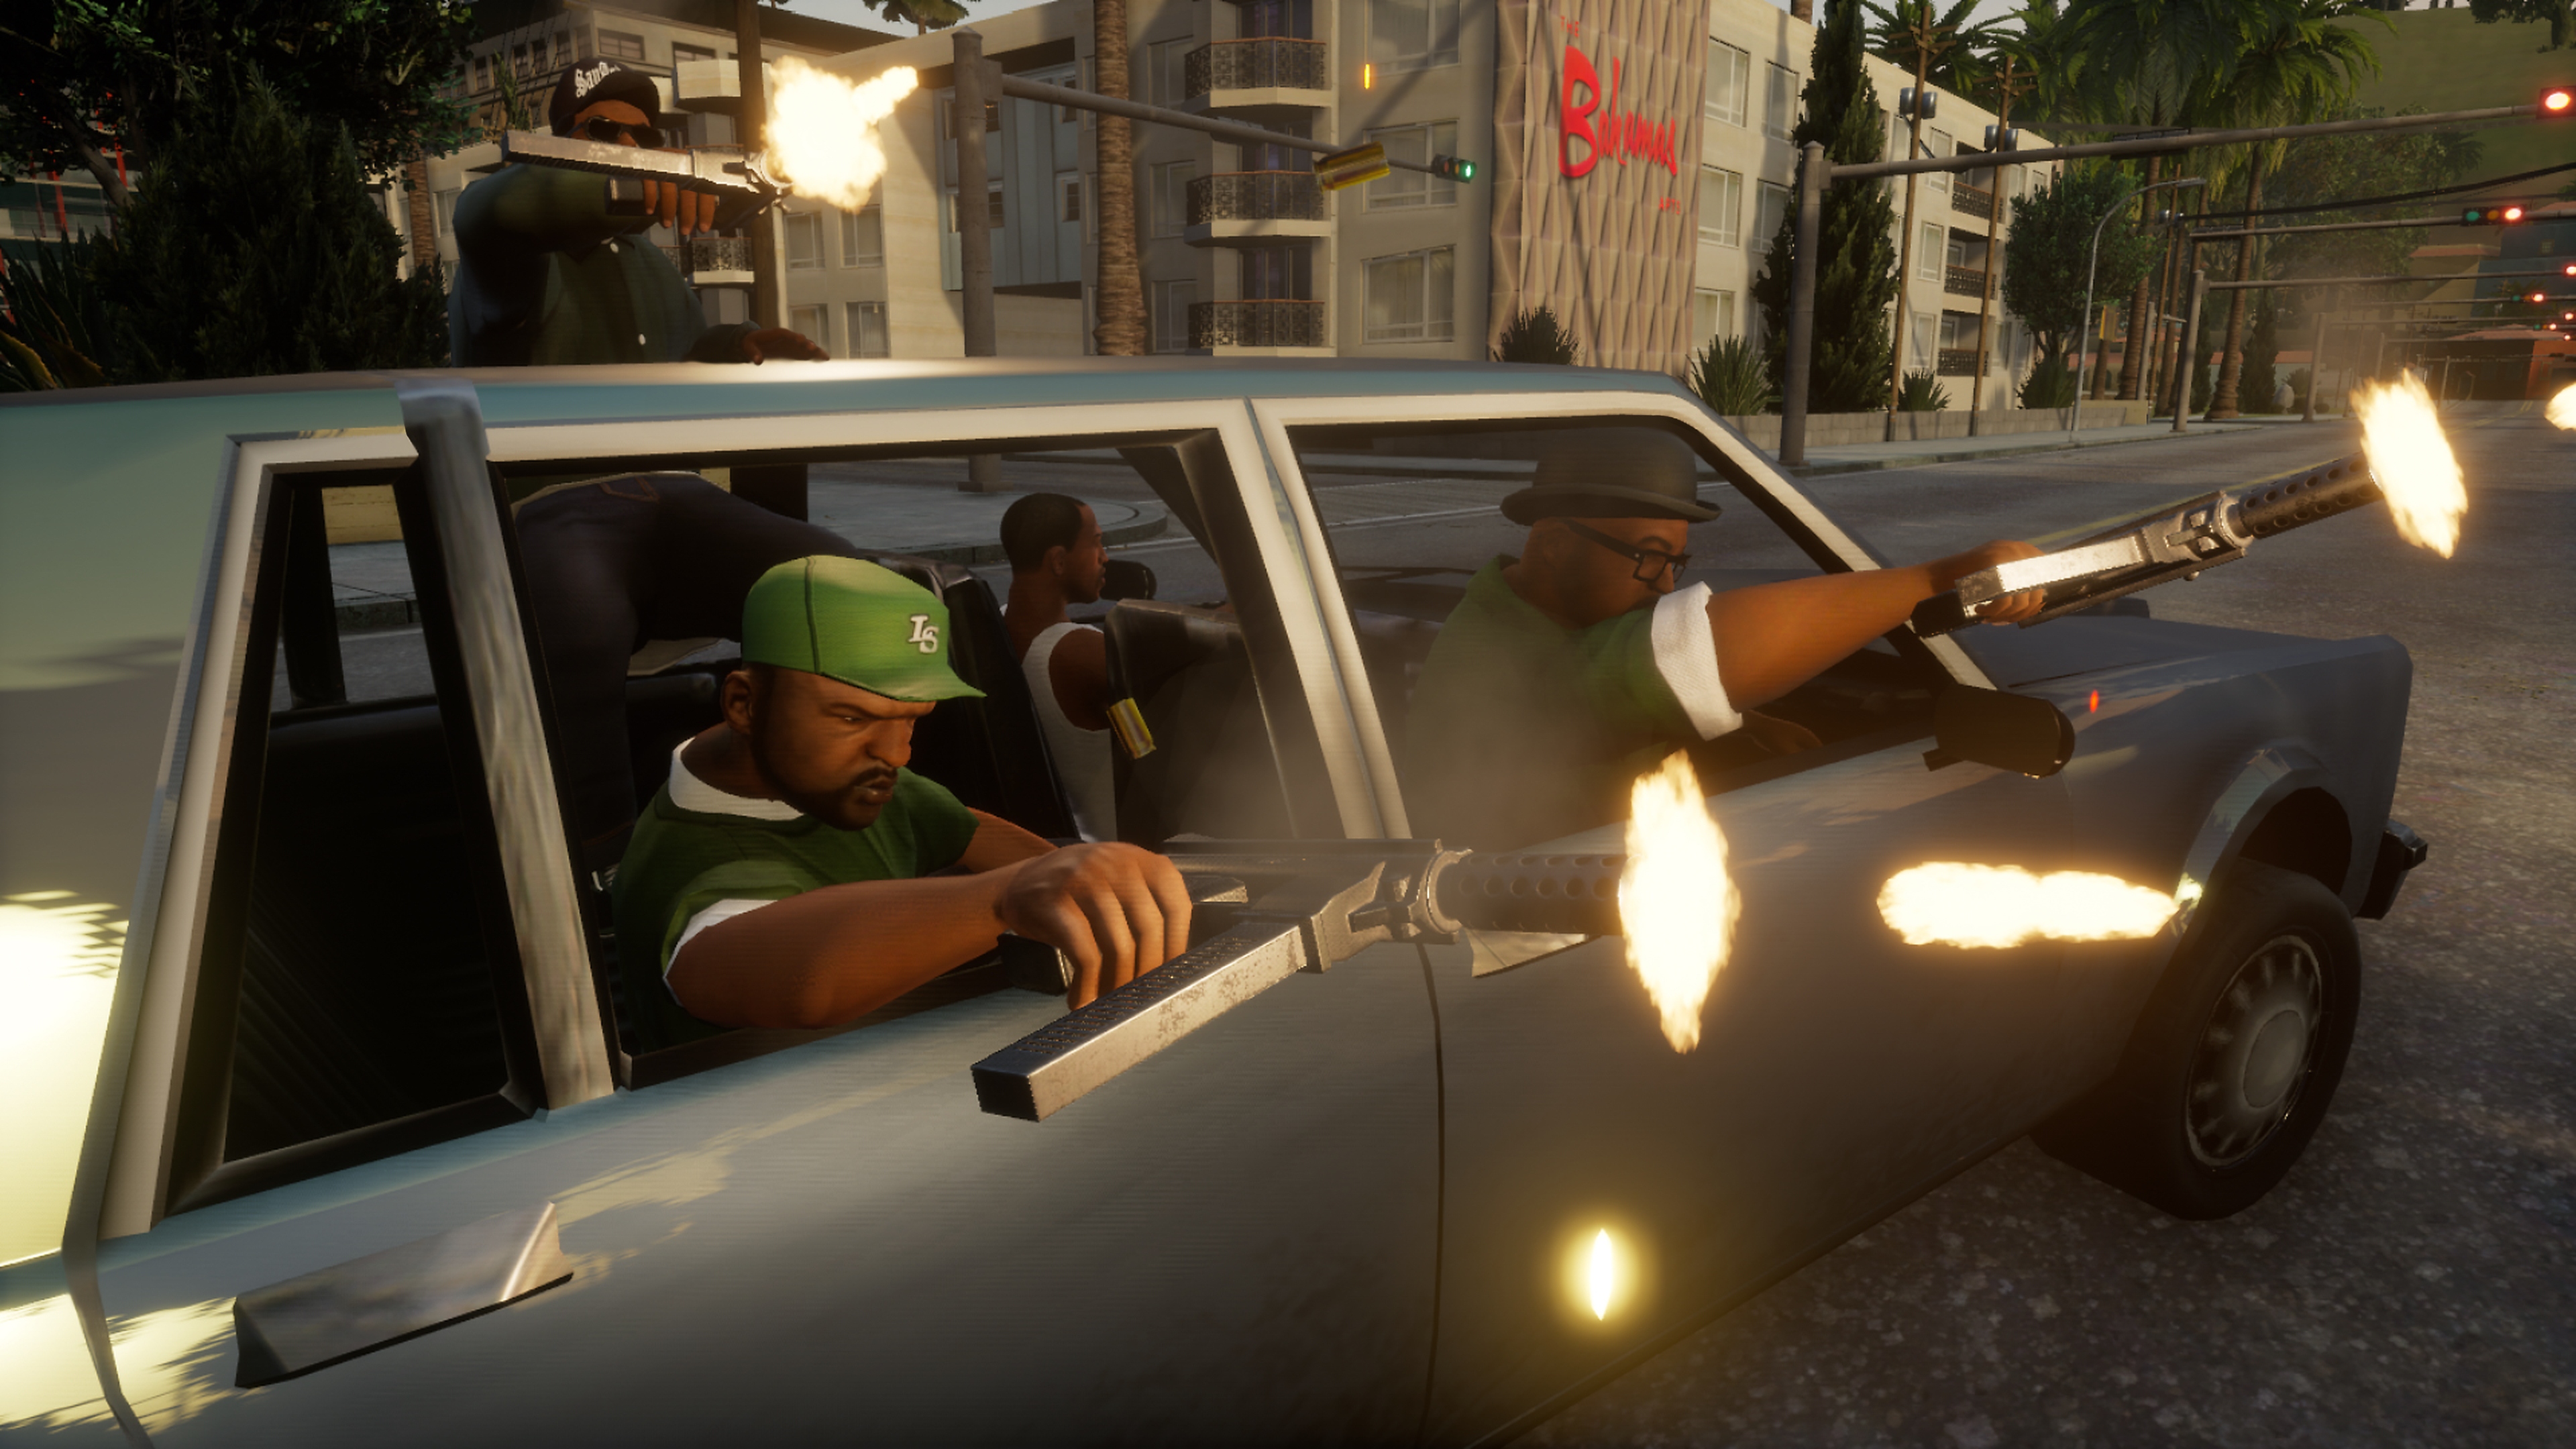  Grand Theft Auto: San Andreas - galerie de captures d'écran 2